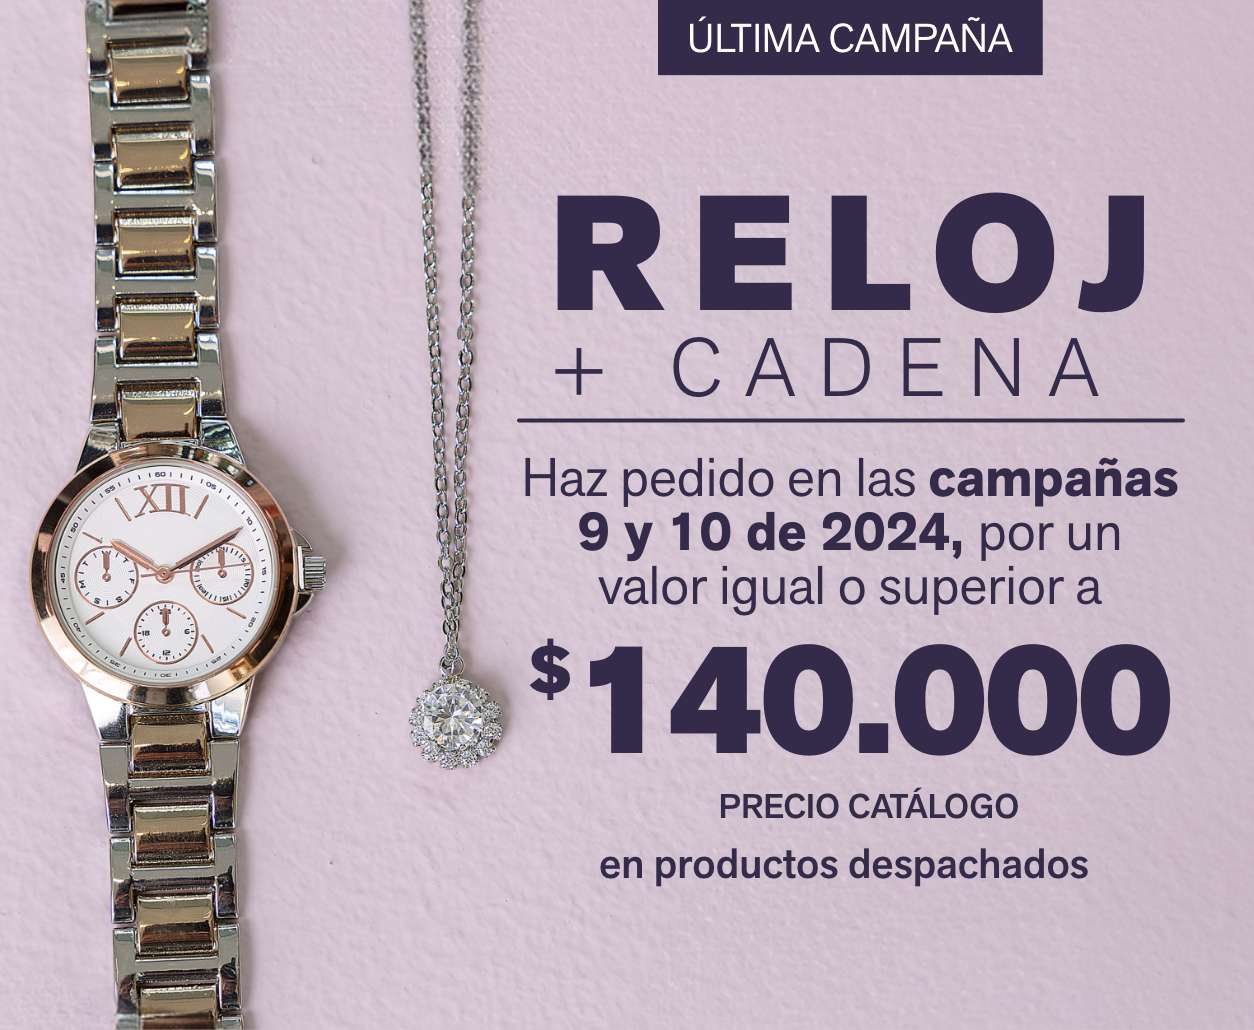 Relo + Cadena